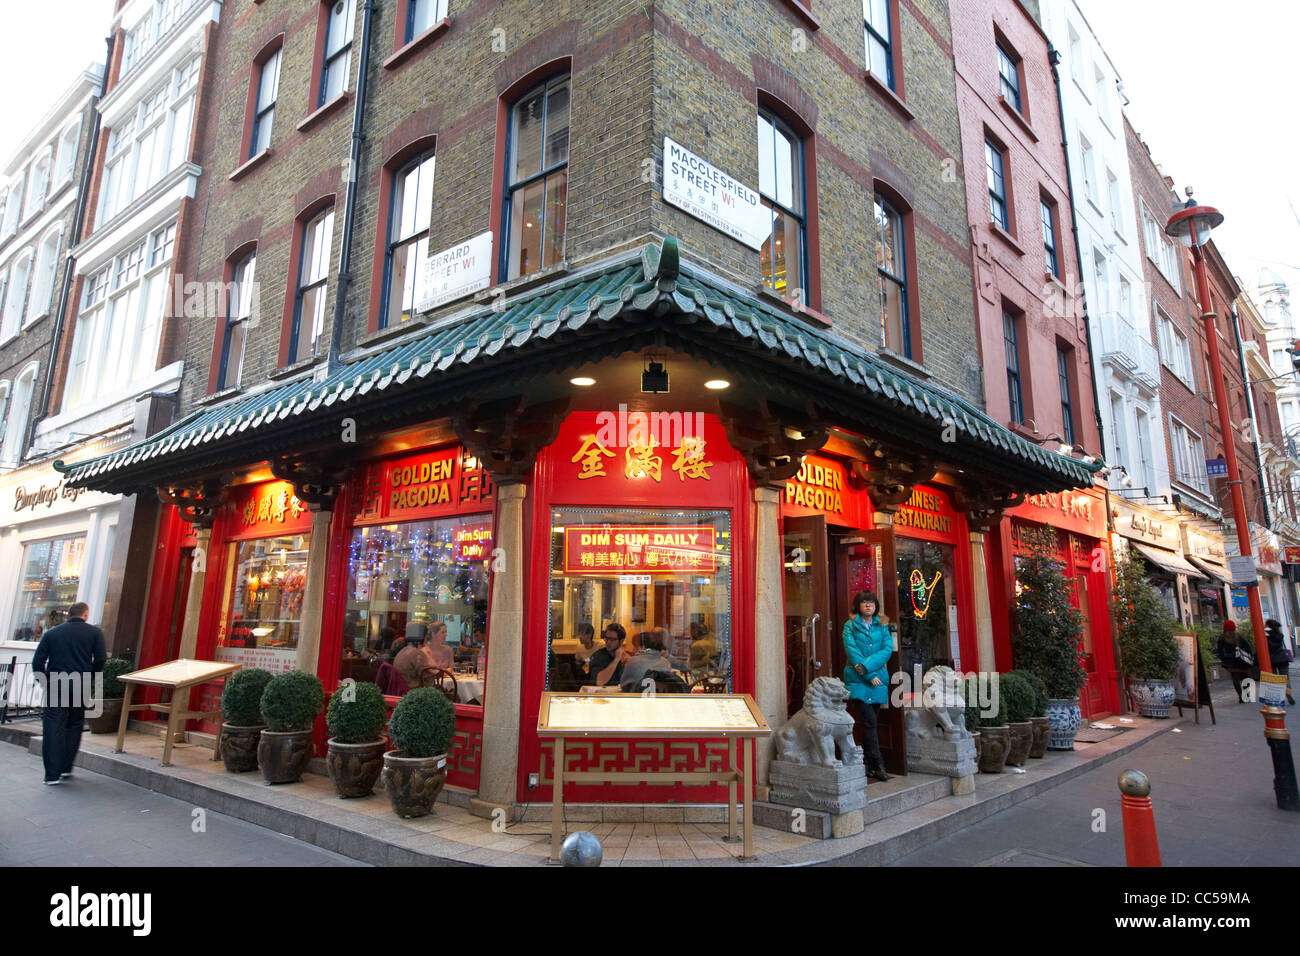 La pagoda dorata ristorante cinese nell'angolo di Gerrard Street e a Macclesfield street chinatown Londra Inghilterra REGNO UNITO Foto Stock